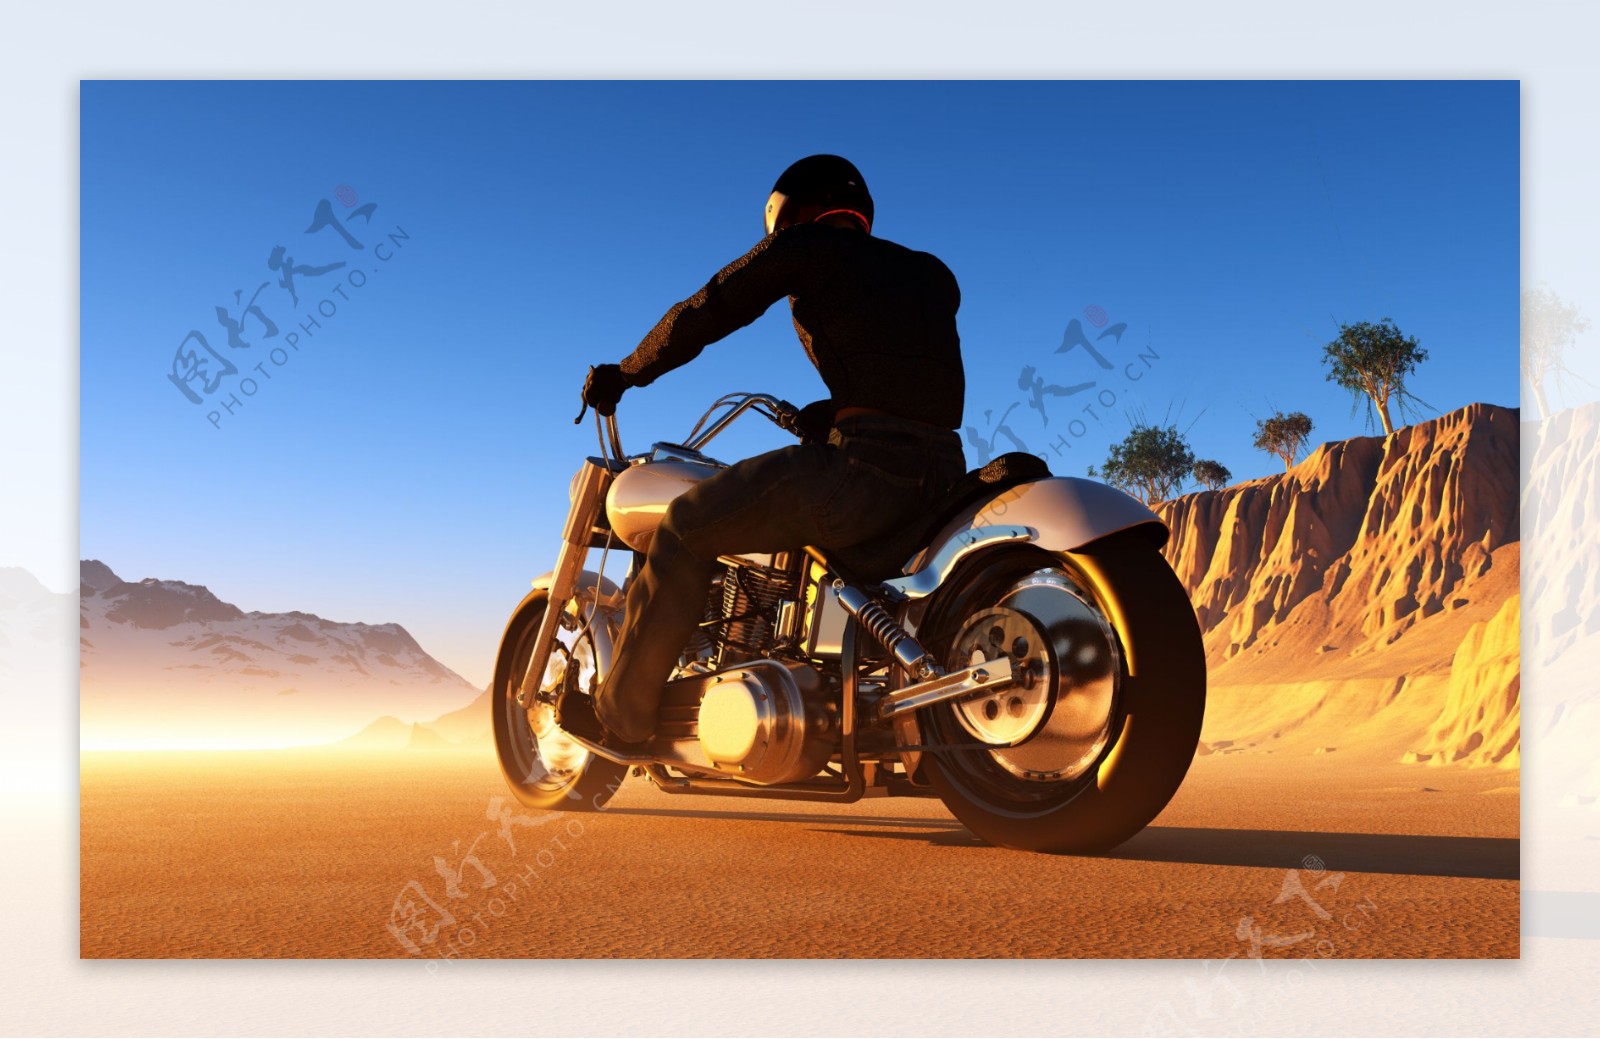 野外骑摩托车的男人图片